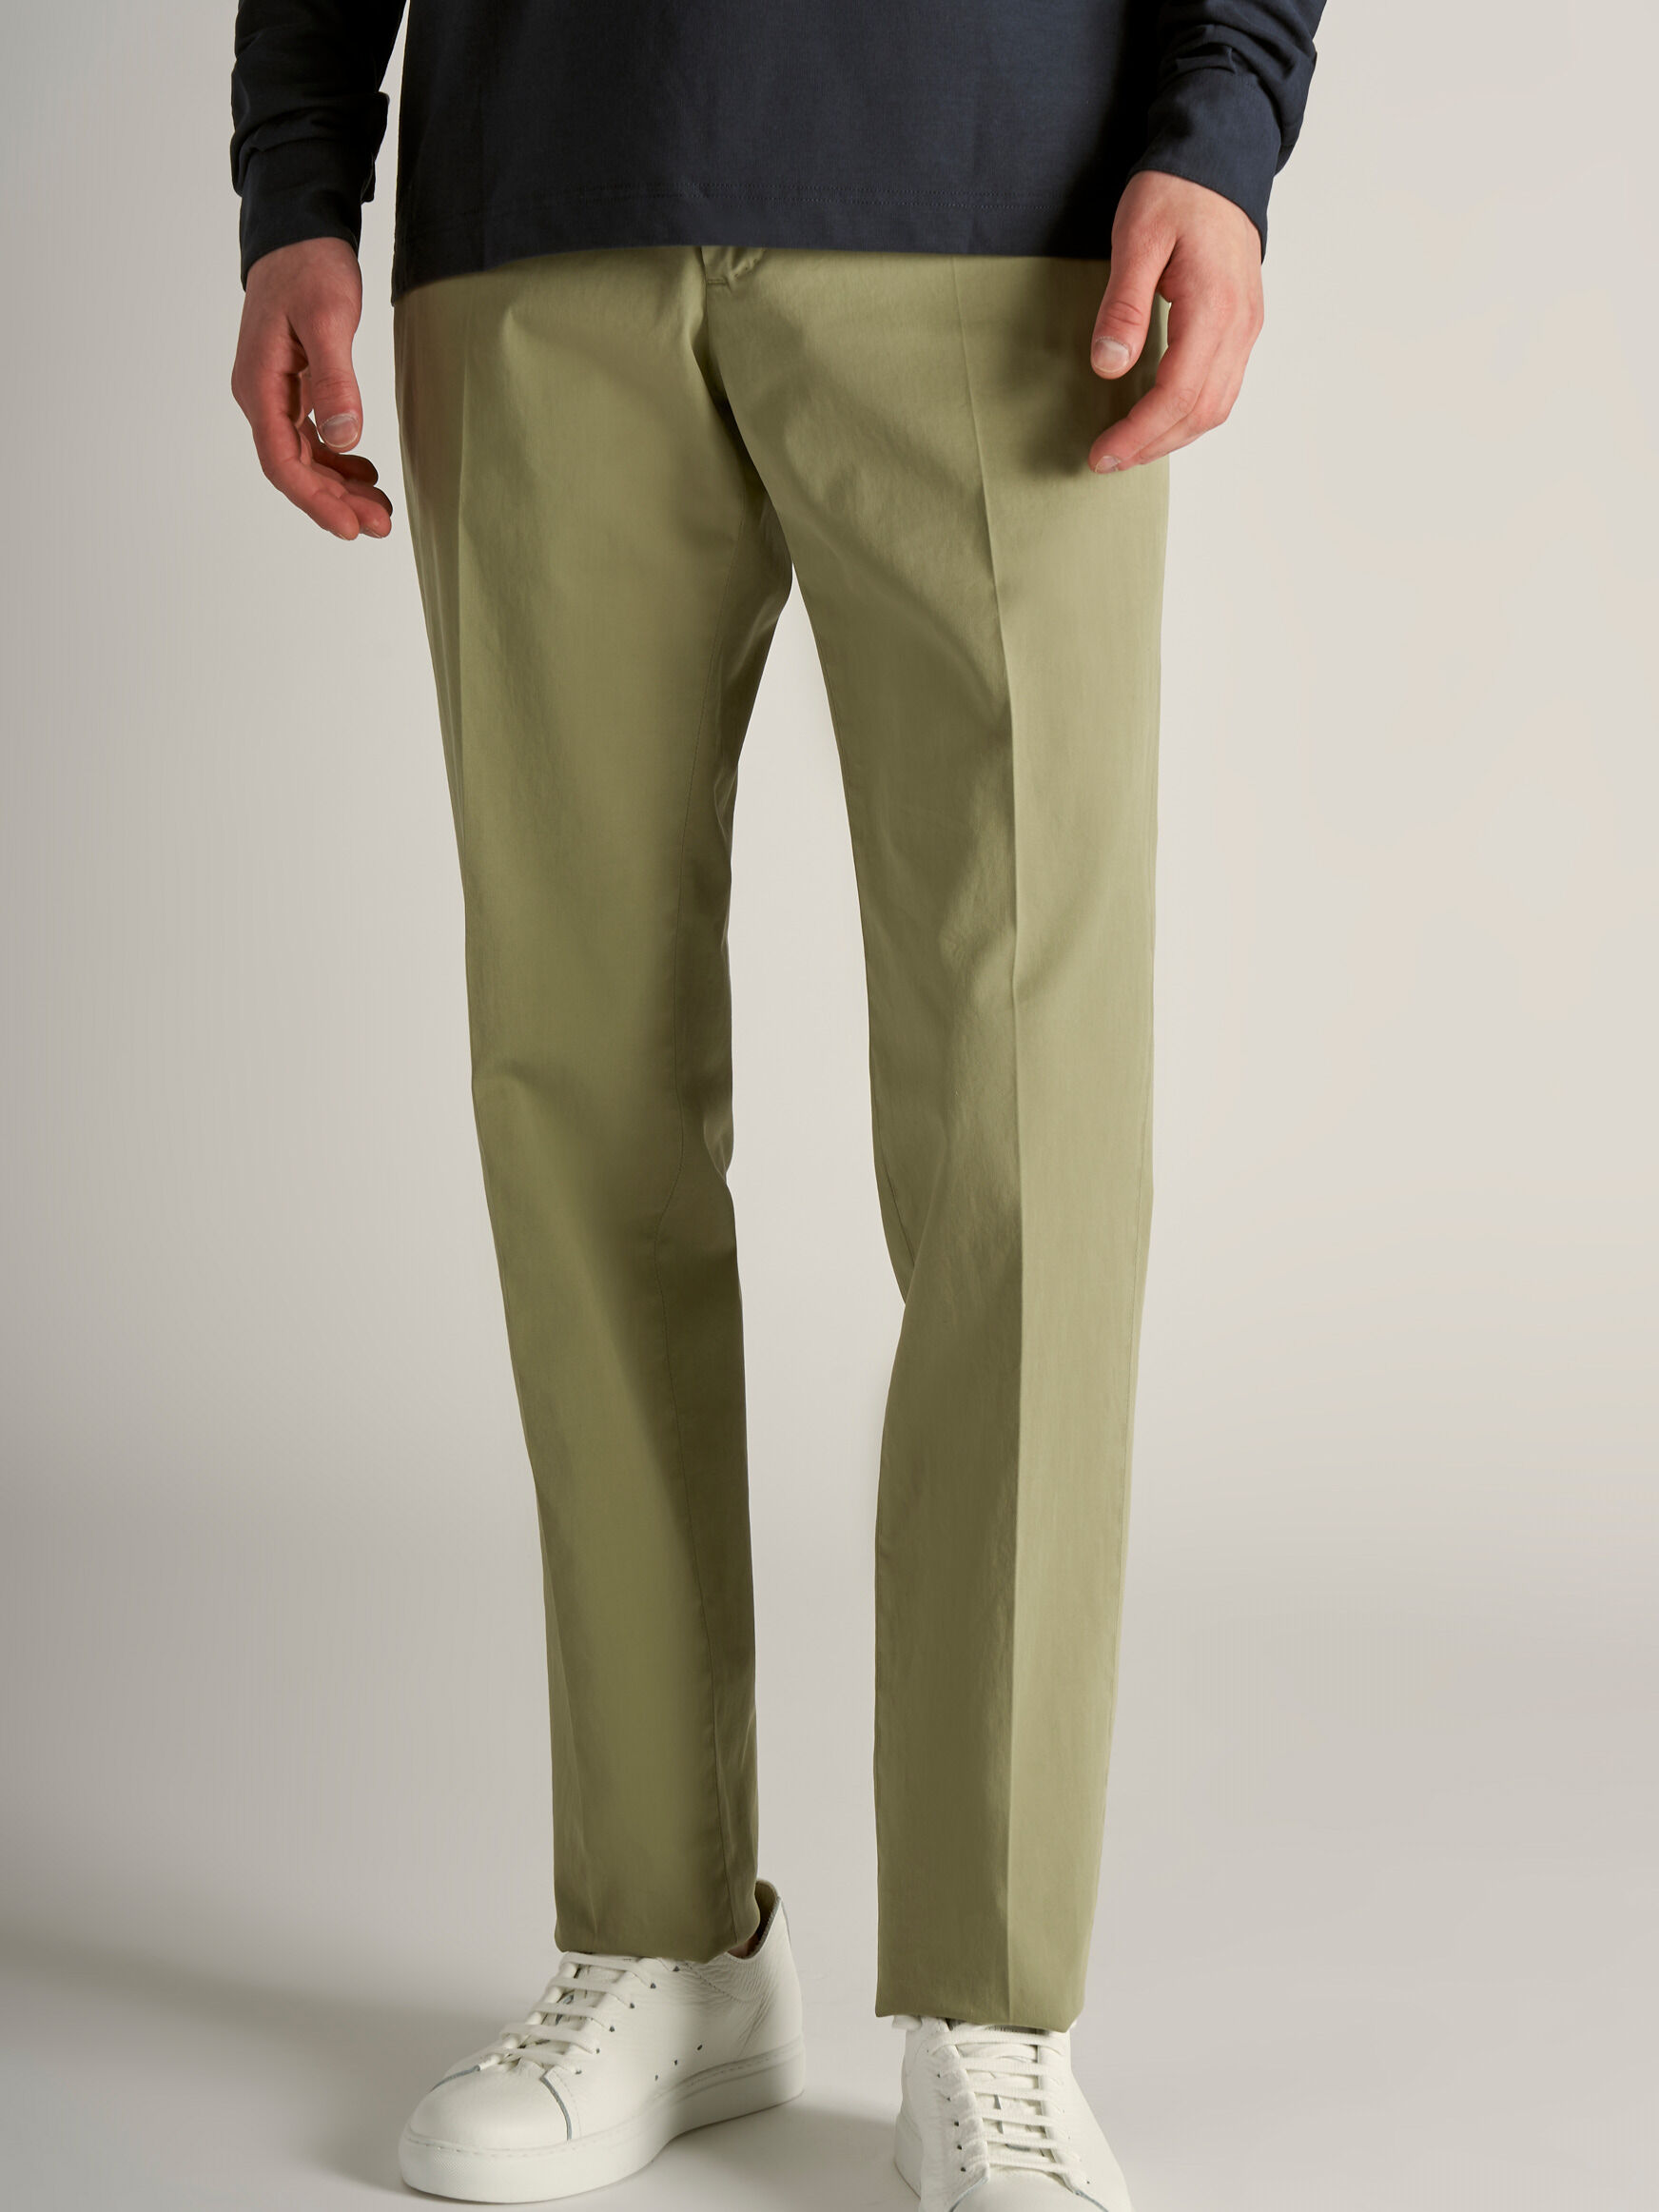 INCOTEX cotton pants olive size 46